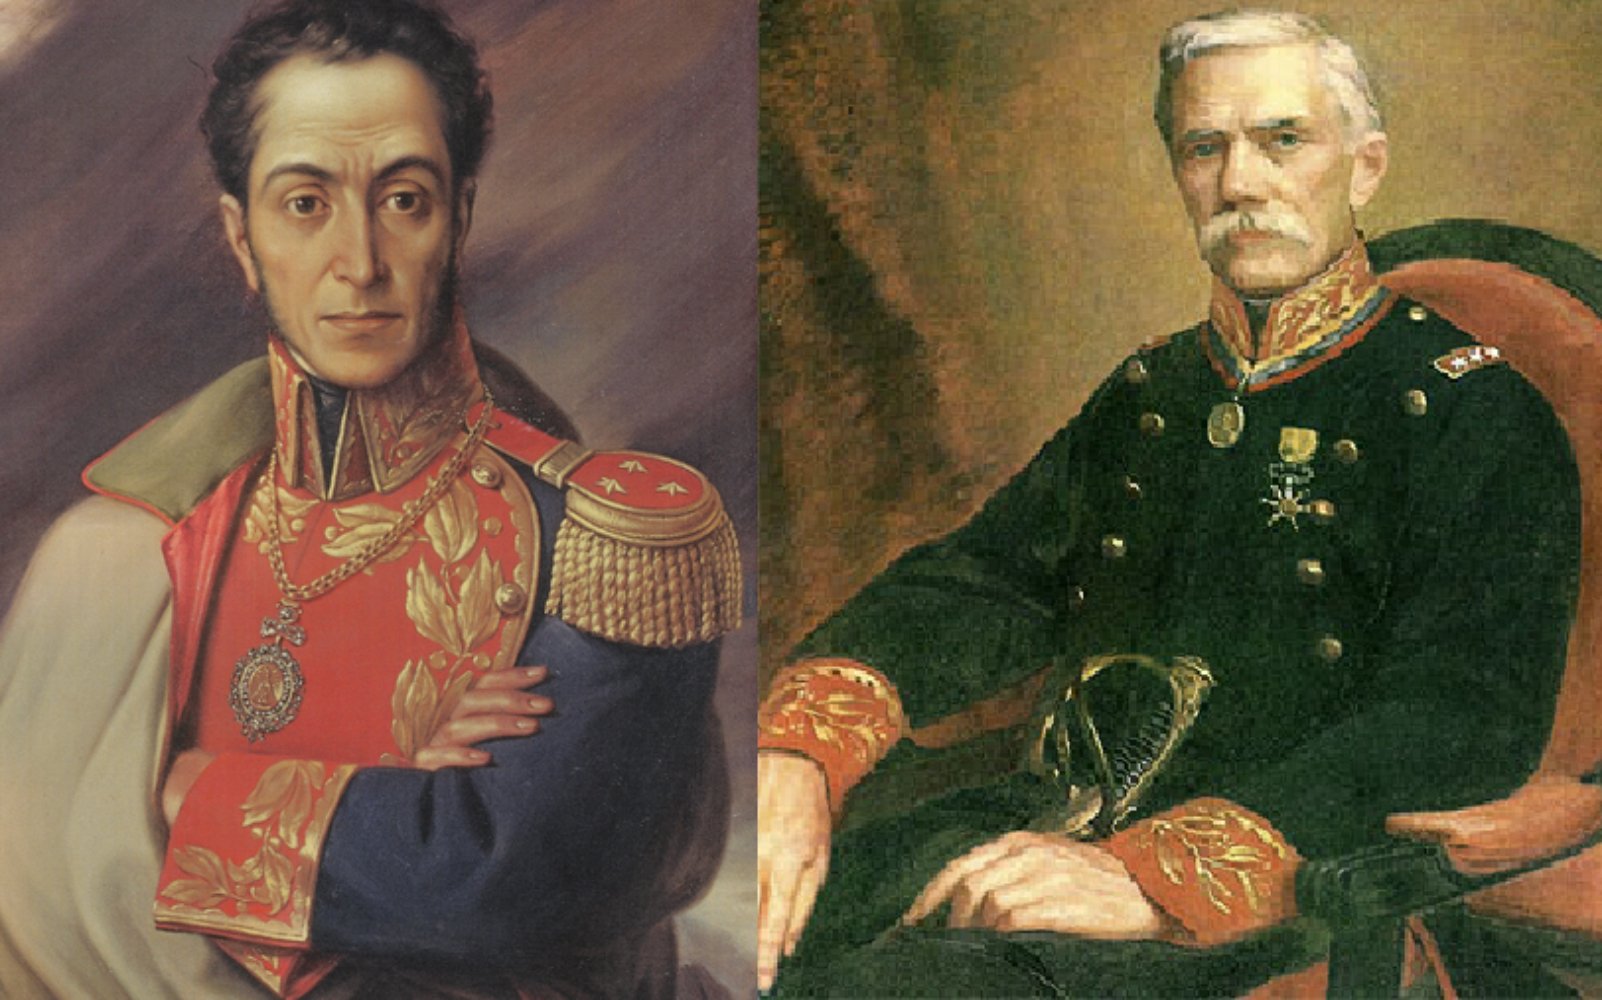 Los generales Simon Bolivar y Bartomeu Salom. Fuente Palacio Legislativo de La Paz (Bolivia) y Palació Federal de Caracas (Venezuela)